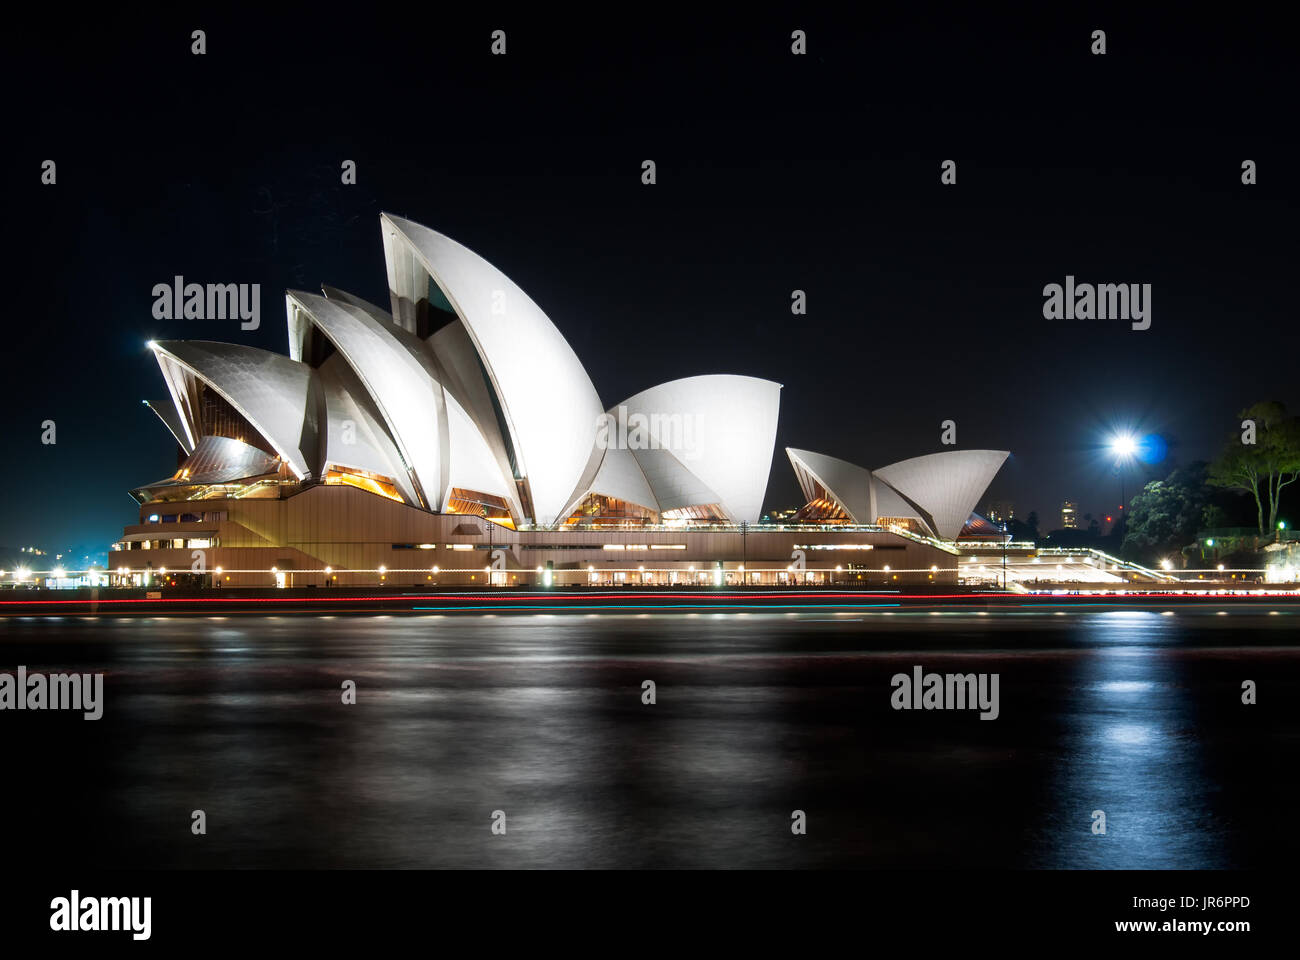 Sydney, Australien - 20. Oktober 2015: Nachtansicht des Sydney Opera House in Sydney, eines der Wahrzeichen in New South Wales, Australien. Stockfoto